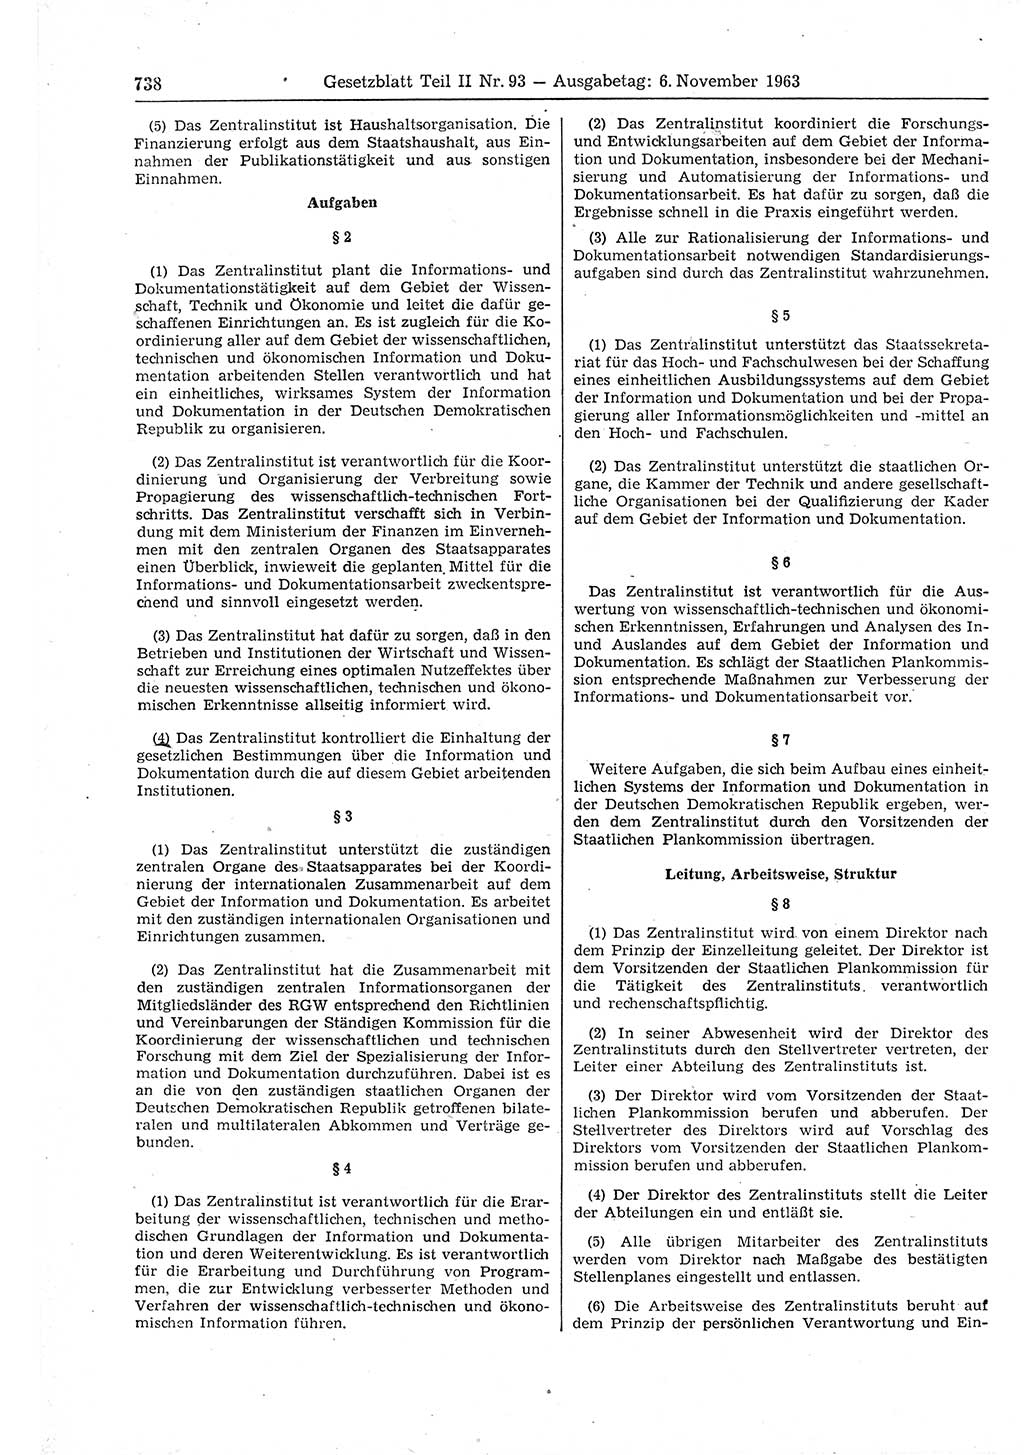 Gesetzblatt (GBl.) der Deutschen Demokratischen Republik (DDR) Teil ⅠⅠ 1963, Seite 738 (GBl. DDR ⅠⅠ 1963, S. 738)